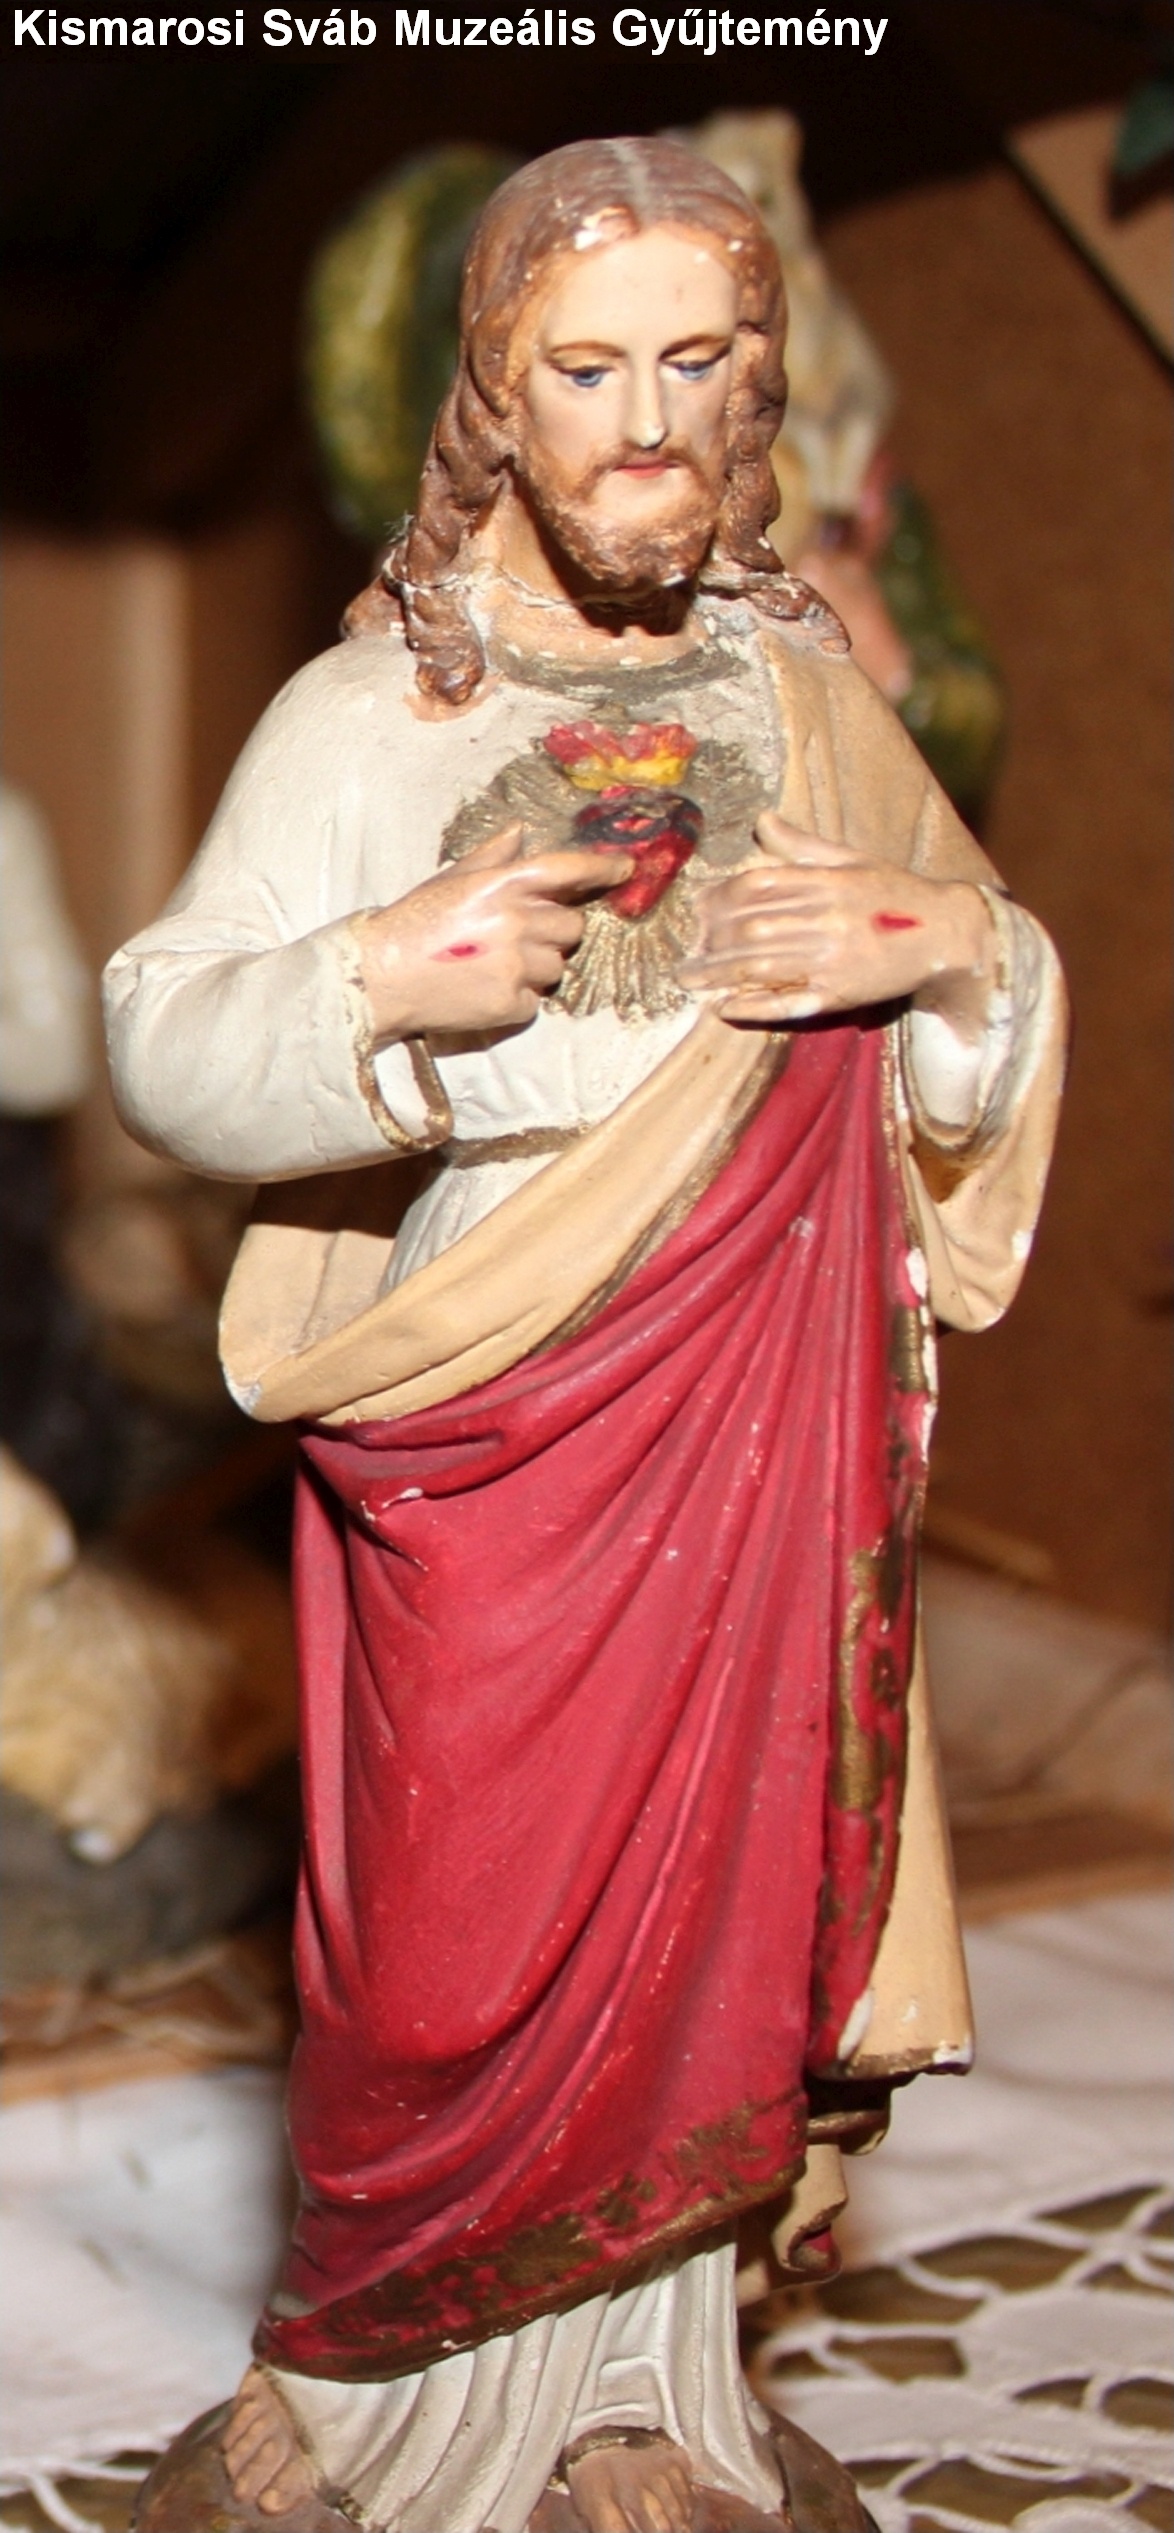 Jézus Szíve szobor (Kismarosi Sváb Muzeális Gyűjtemény RR-F)